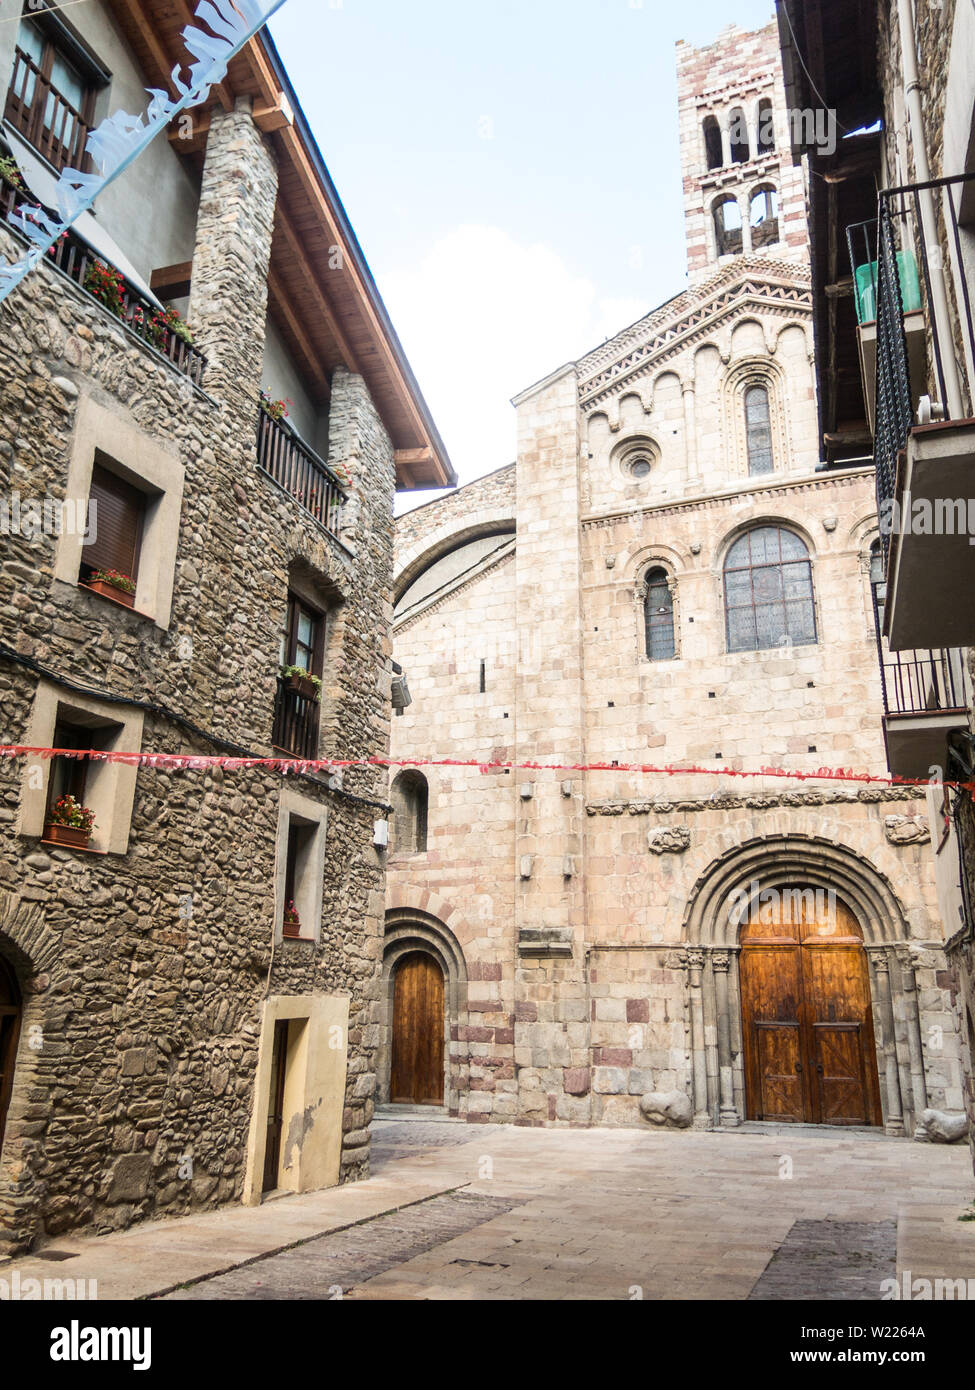 La Cathédrale de Santa María de Urgel est de style roman dans le style et date du 12ème siècle. Seo de Urgel. La Catalogne, Espagne. L'Europe Banque D'Images